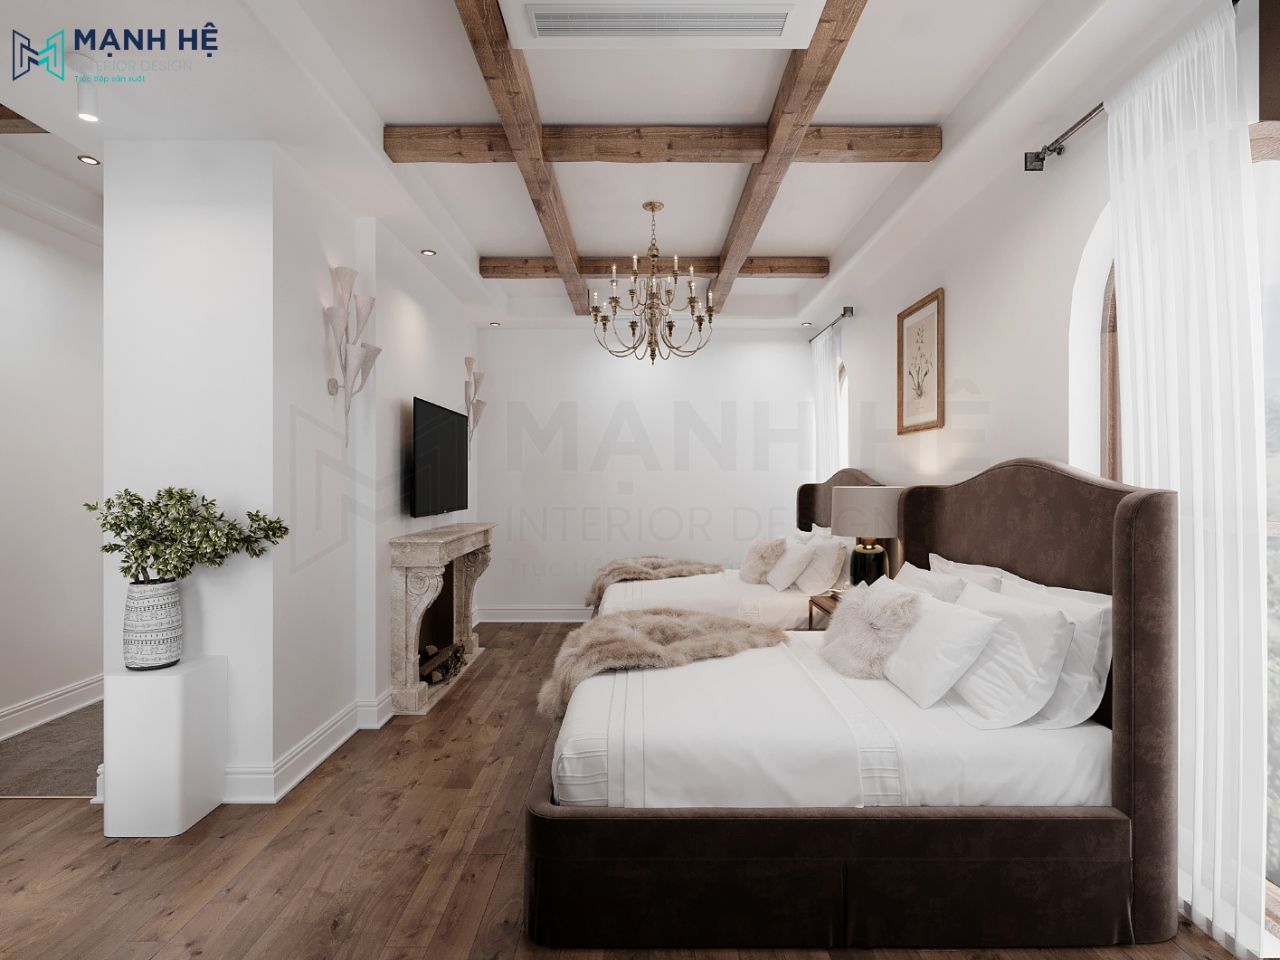 Giường ngủ bọc nhung tone nâu làm cho căn phòng thêm sang trọng và hiện đại